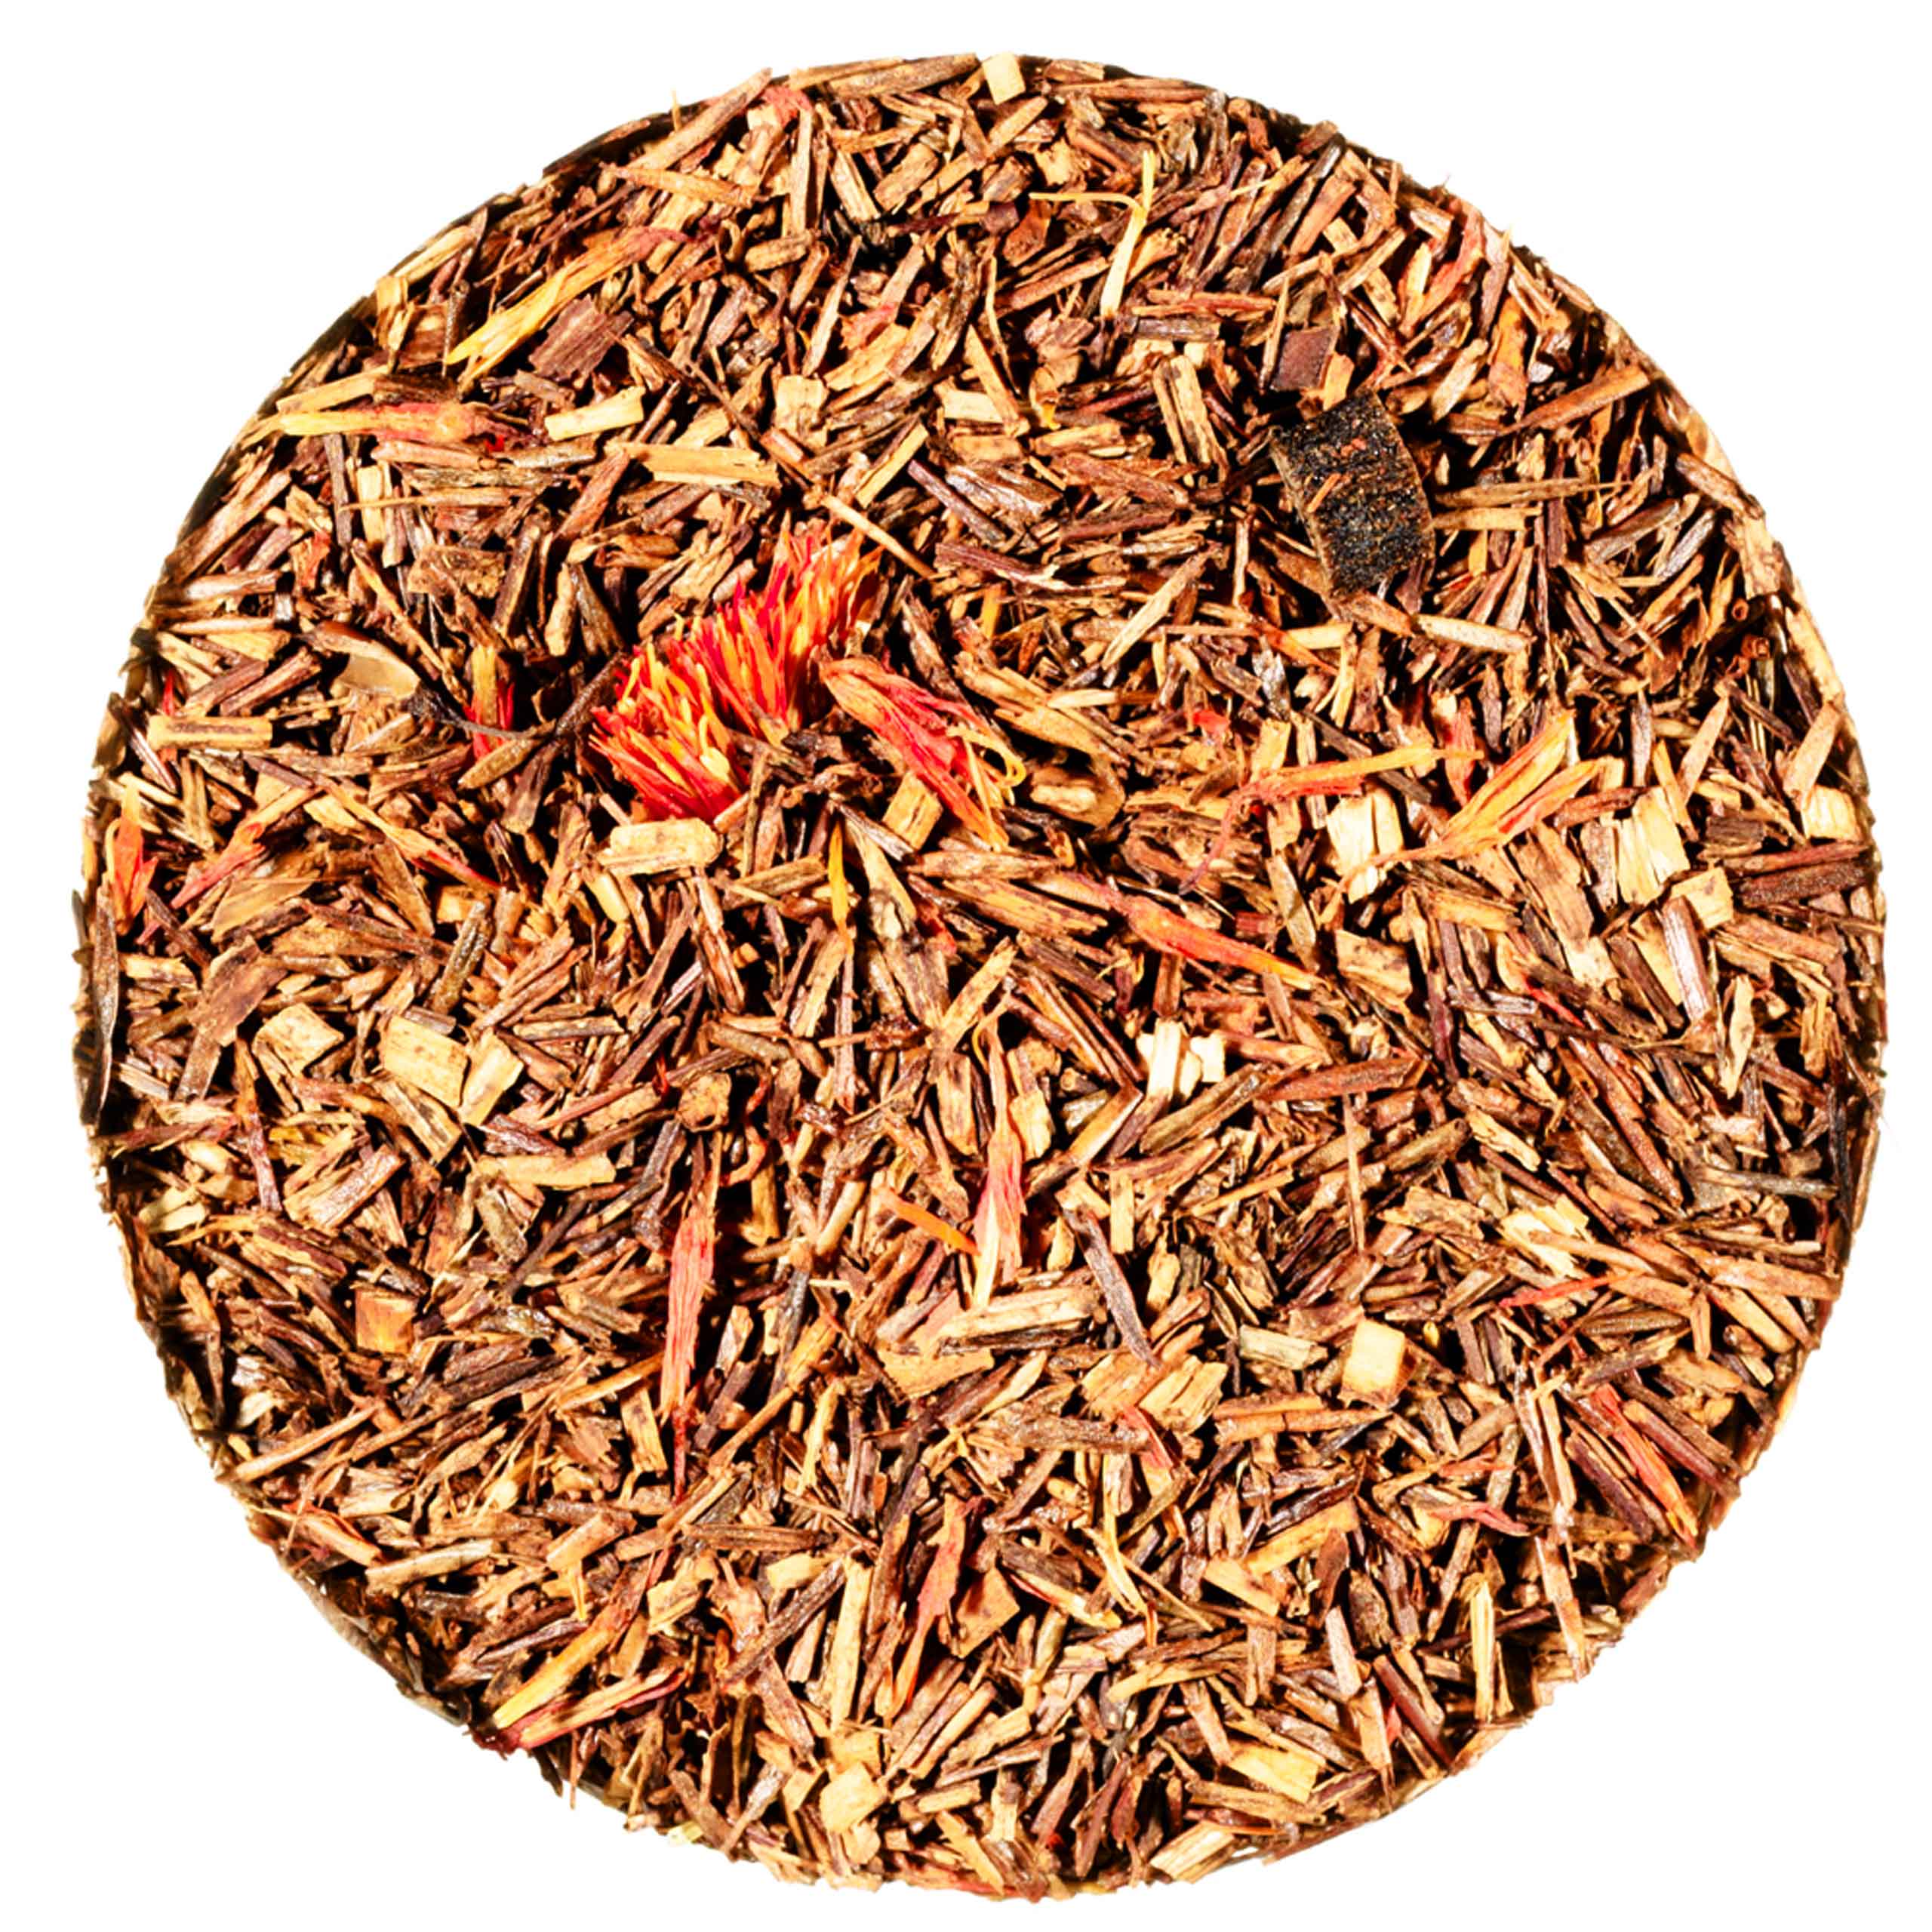 Composición del té Orange Safari